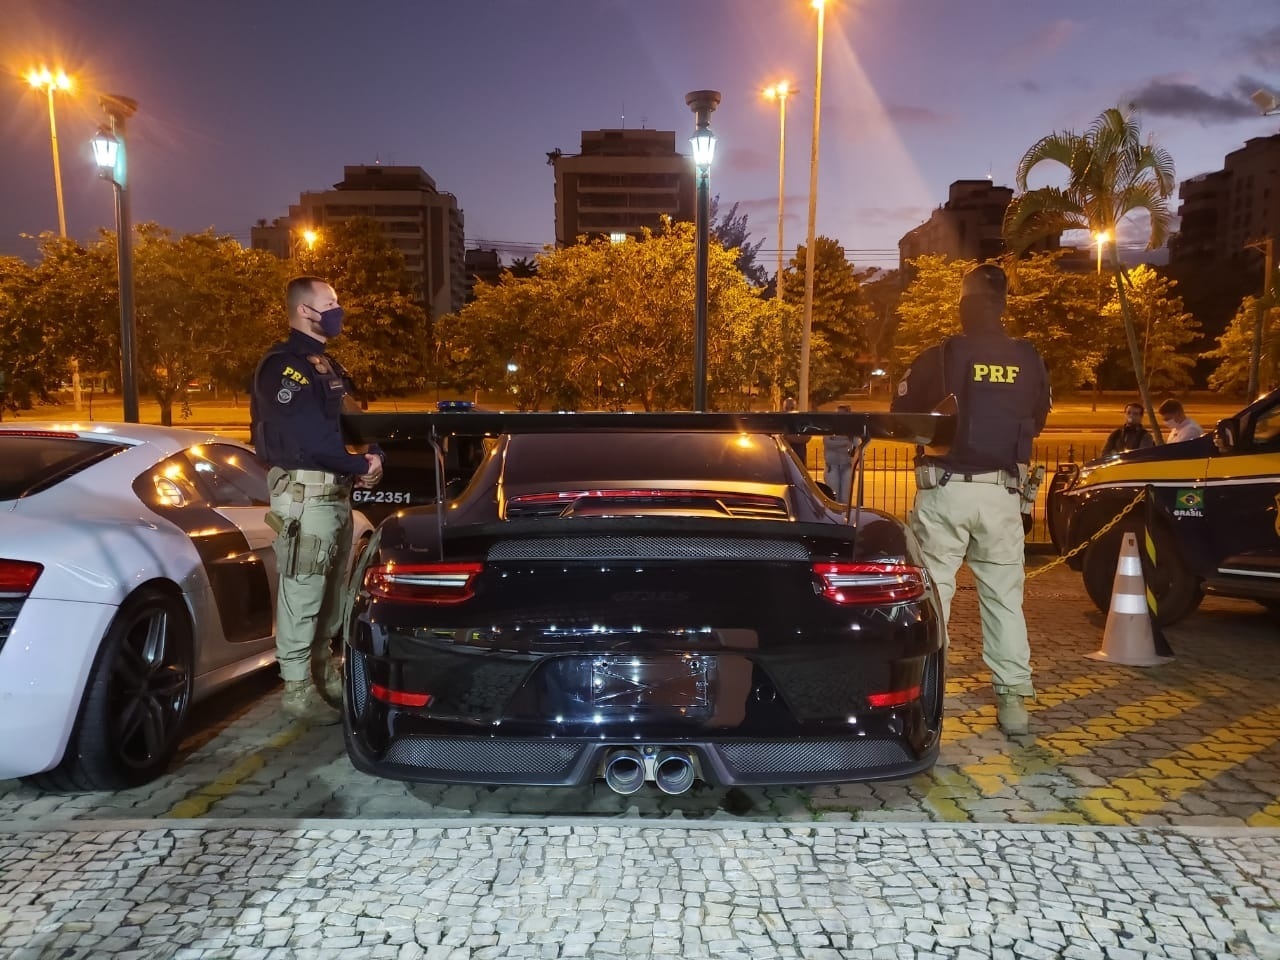 Operação contra 'rachas' apreende 22 carros de luxo e 'tunados' no RJ, Rio  de Janeiro